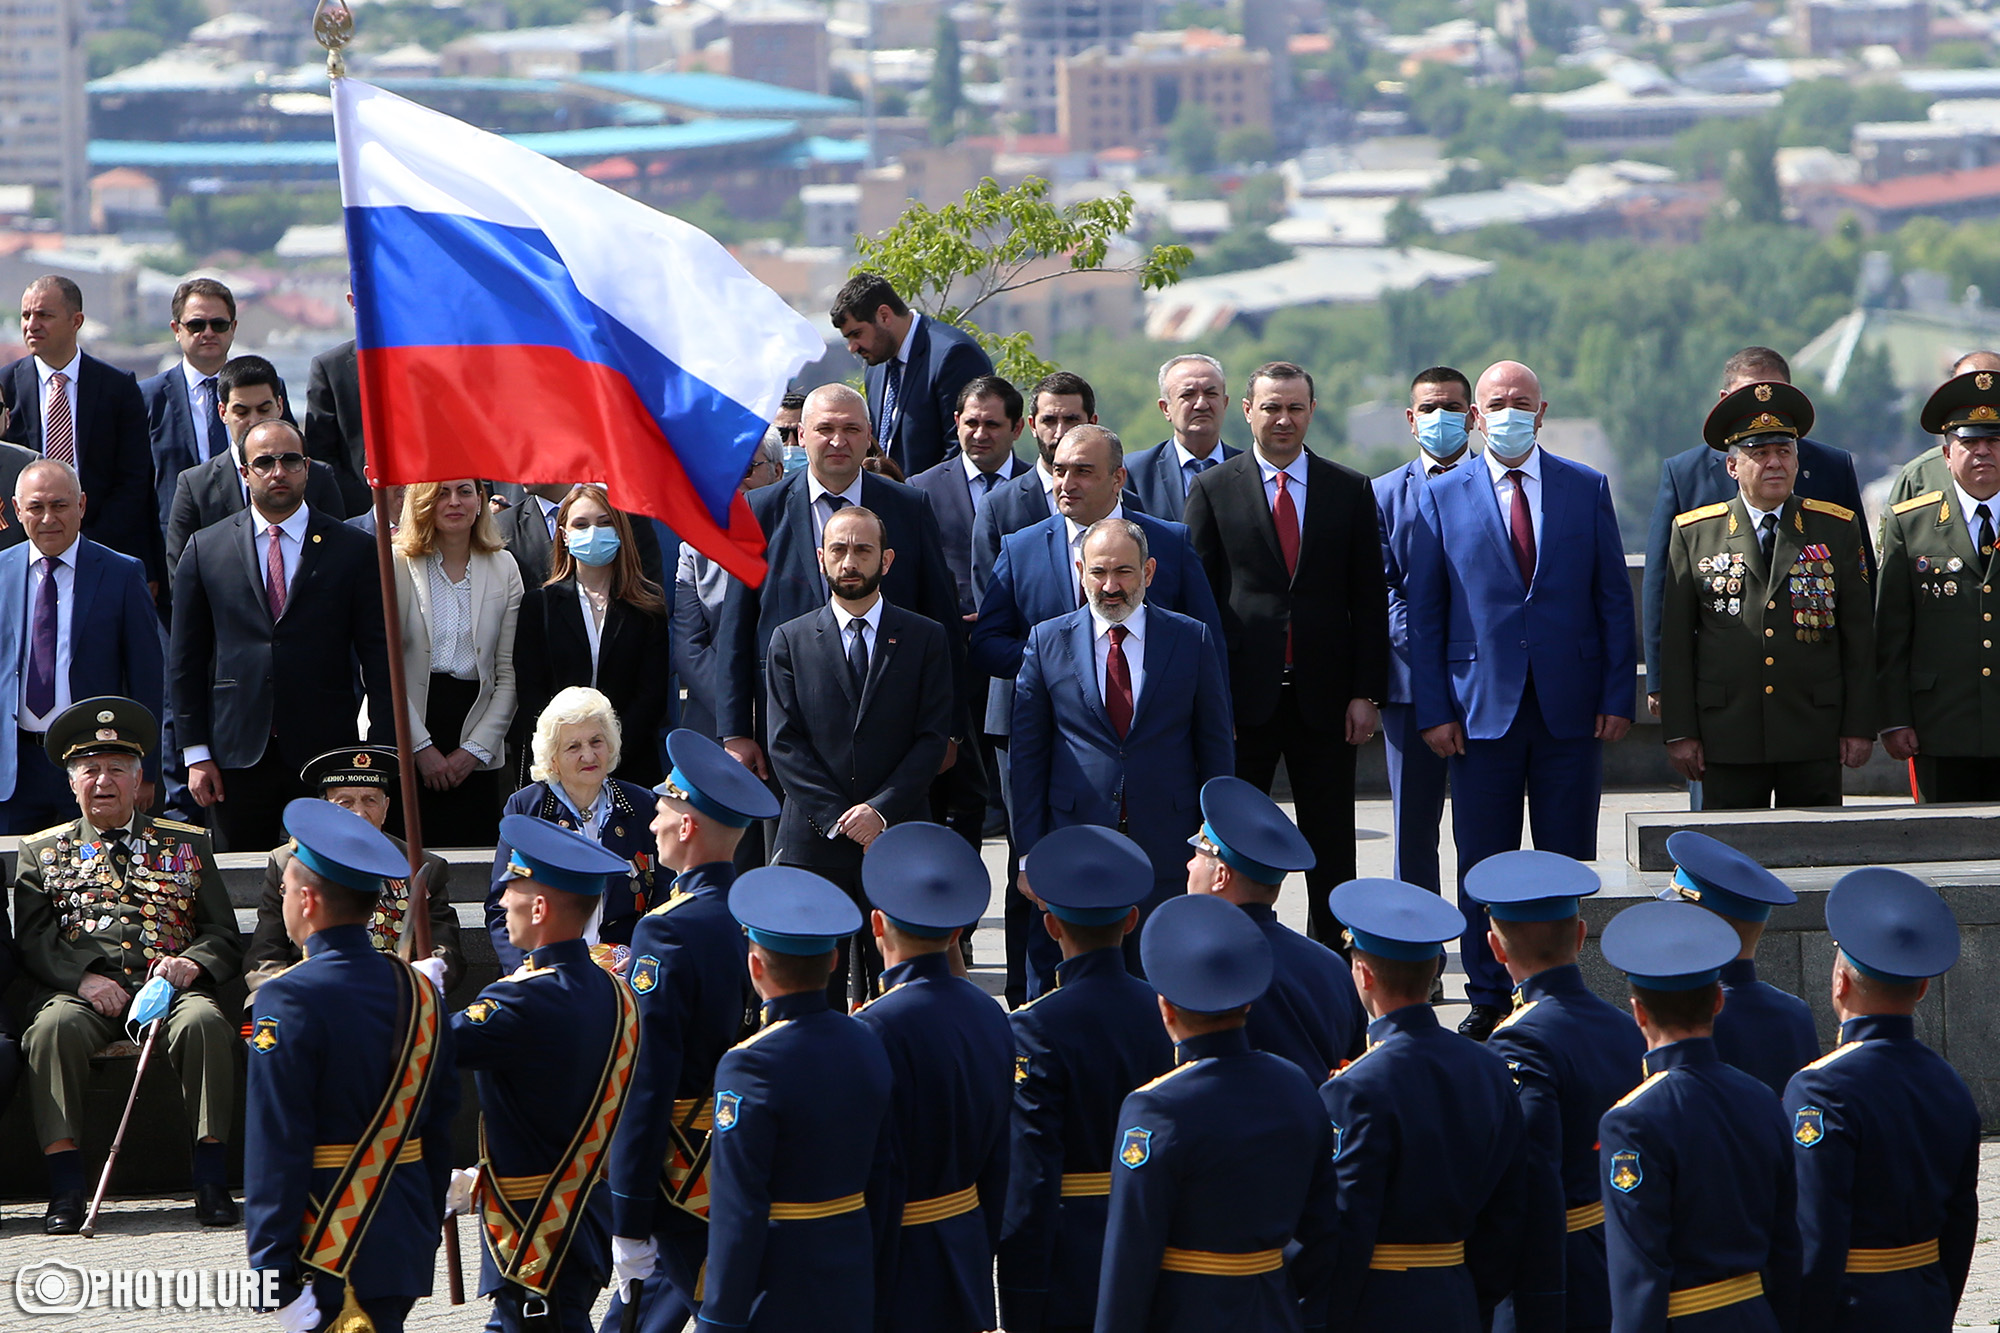 Ռուսաստանն ուզում է, որ Հայաստանը դառնա միութենական պետության կամ ՌԴ մաս․ «Հայկական ժամանակի» «հավաստի աղբյուր»